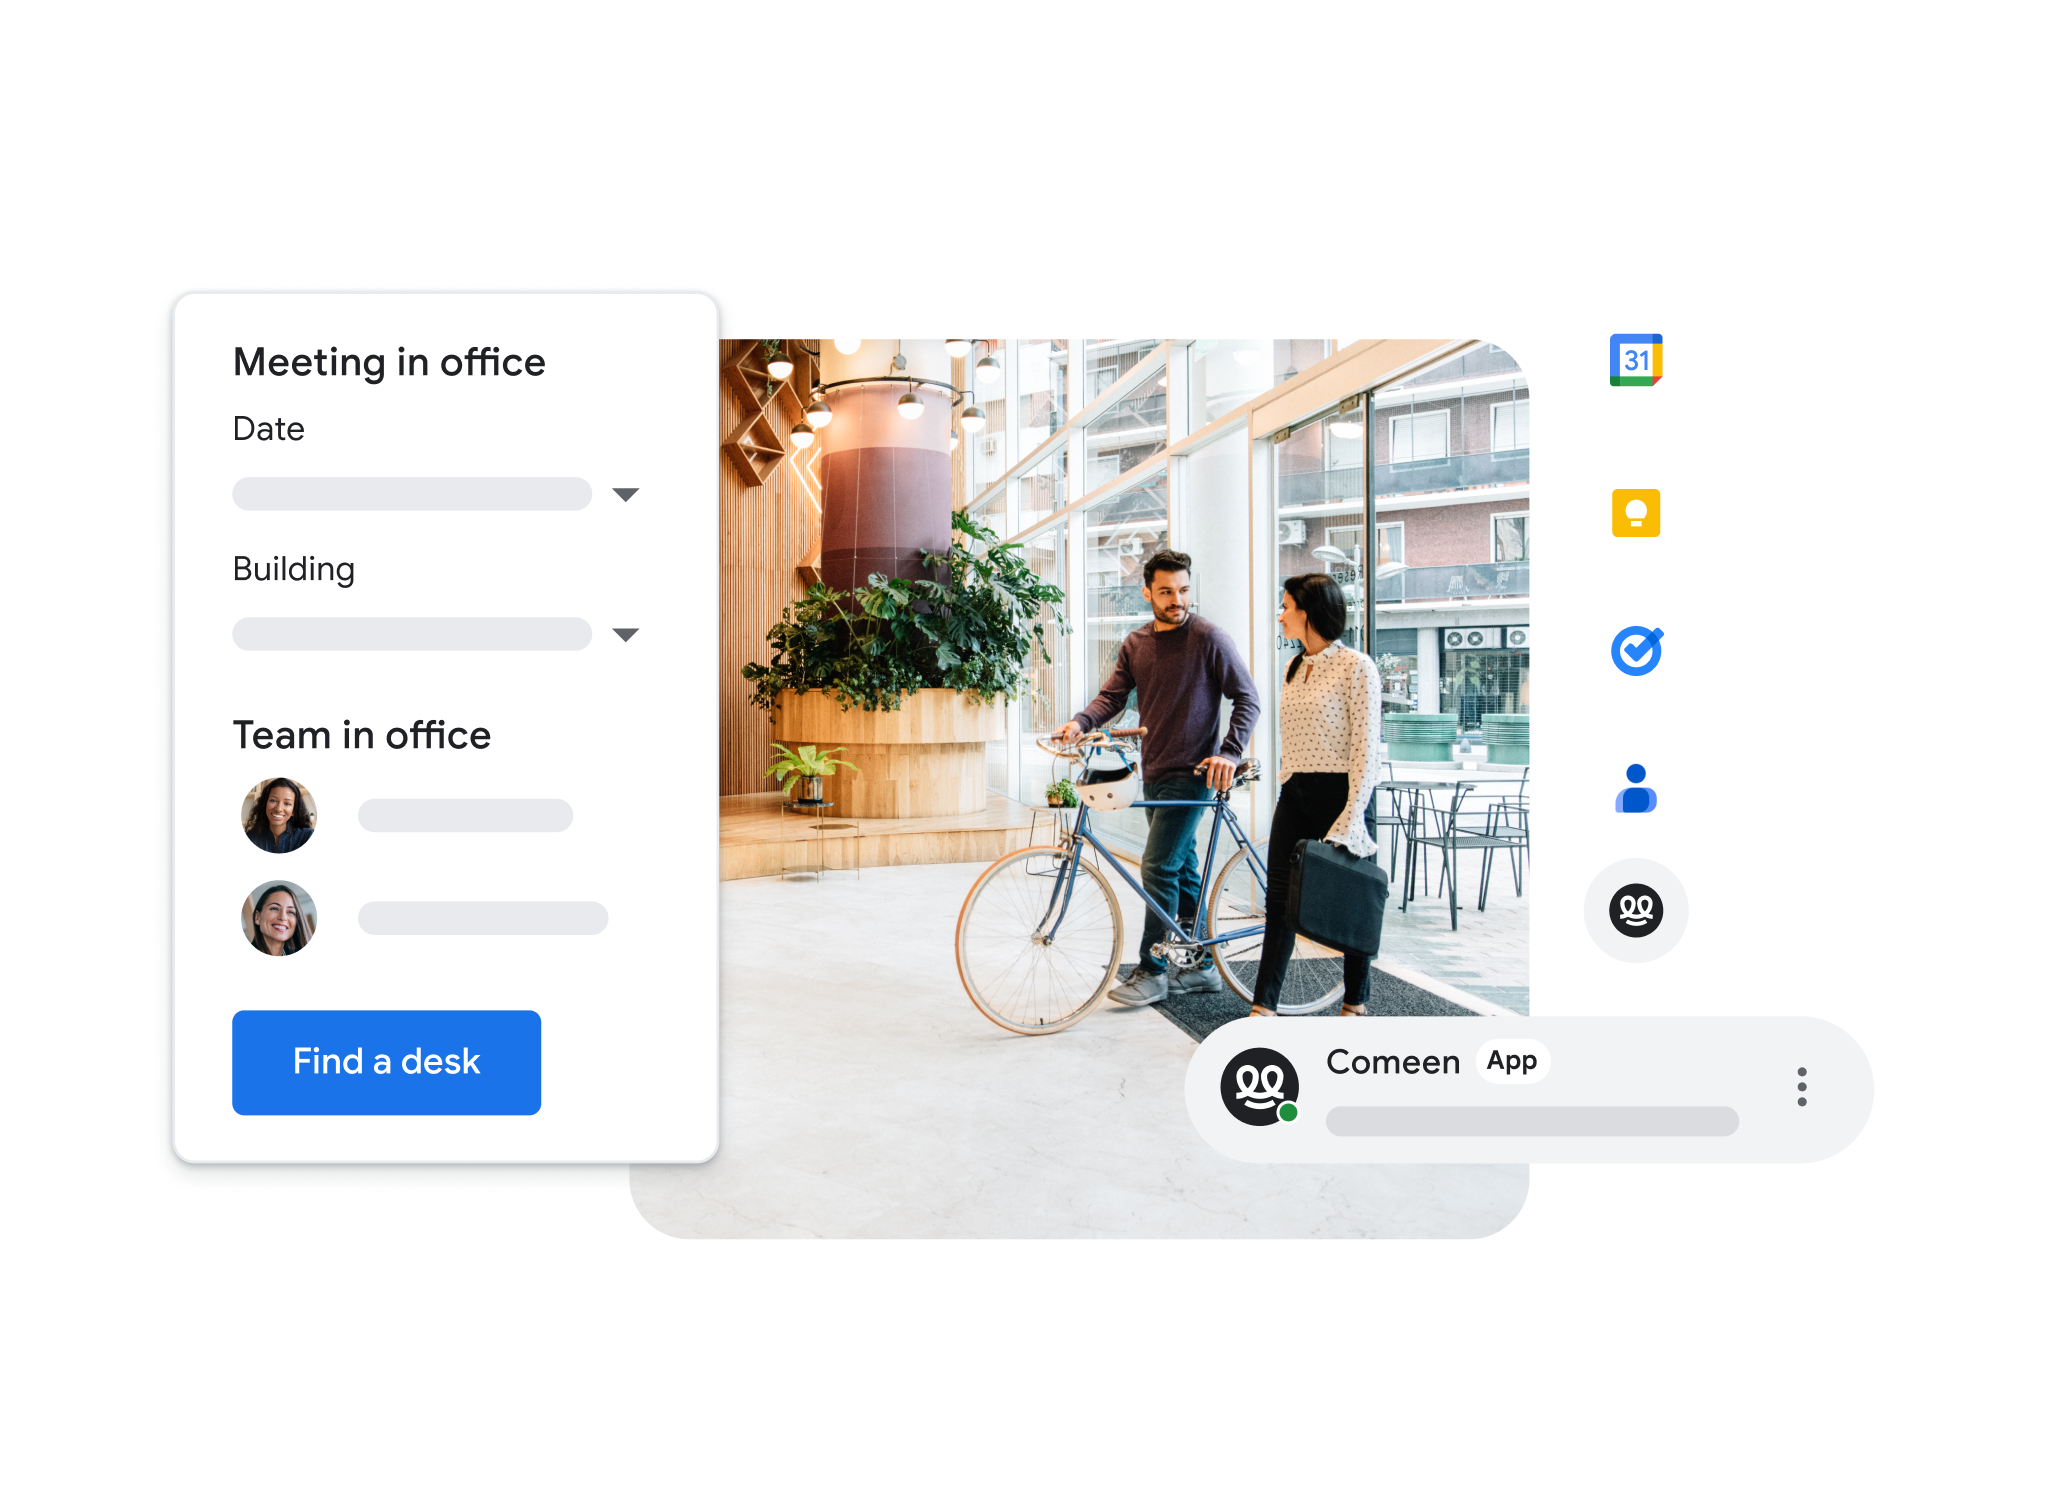 使用者利用 Google Meet 整合功能在其他應用程式中加入會議